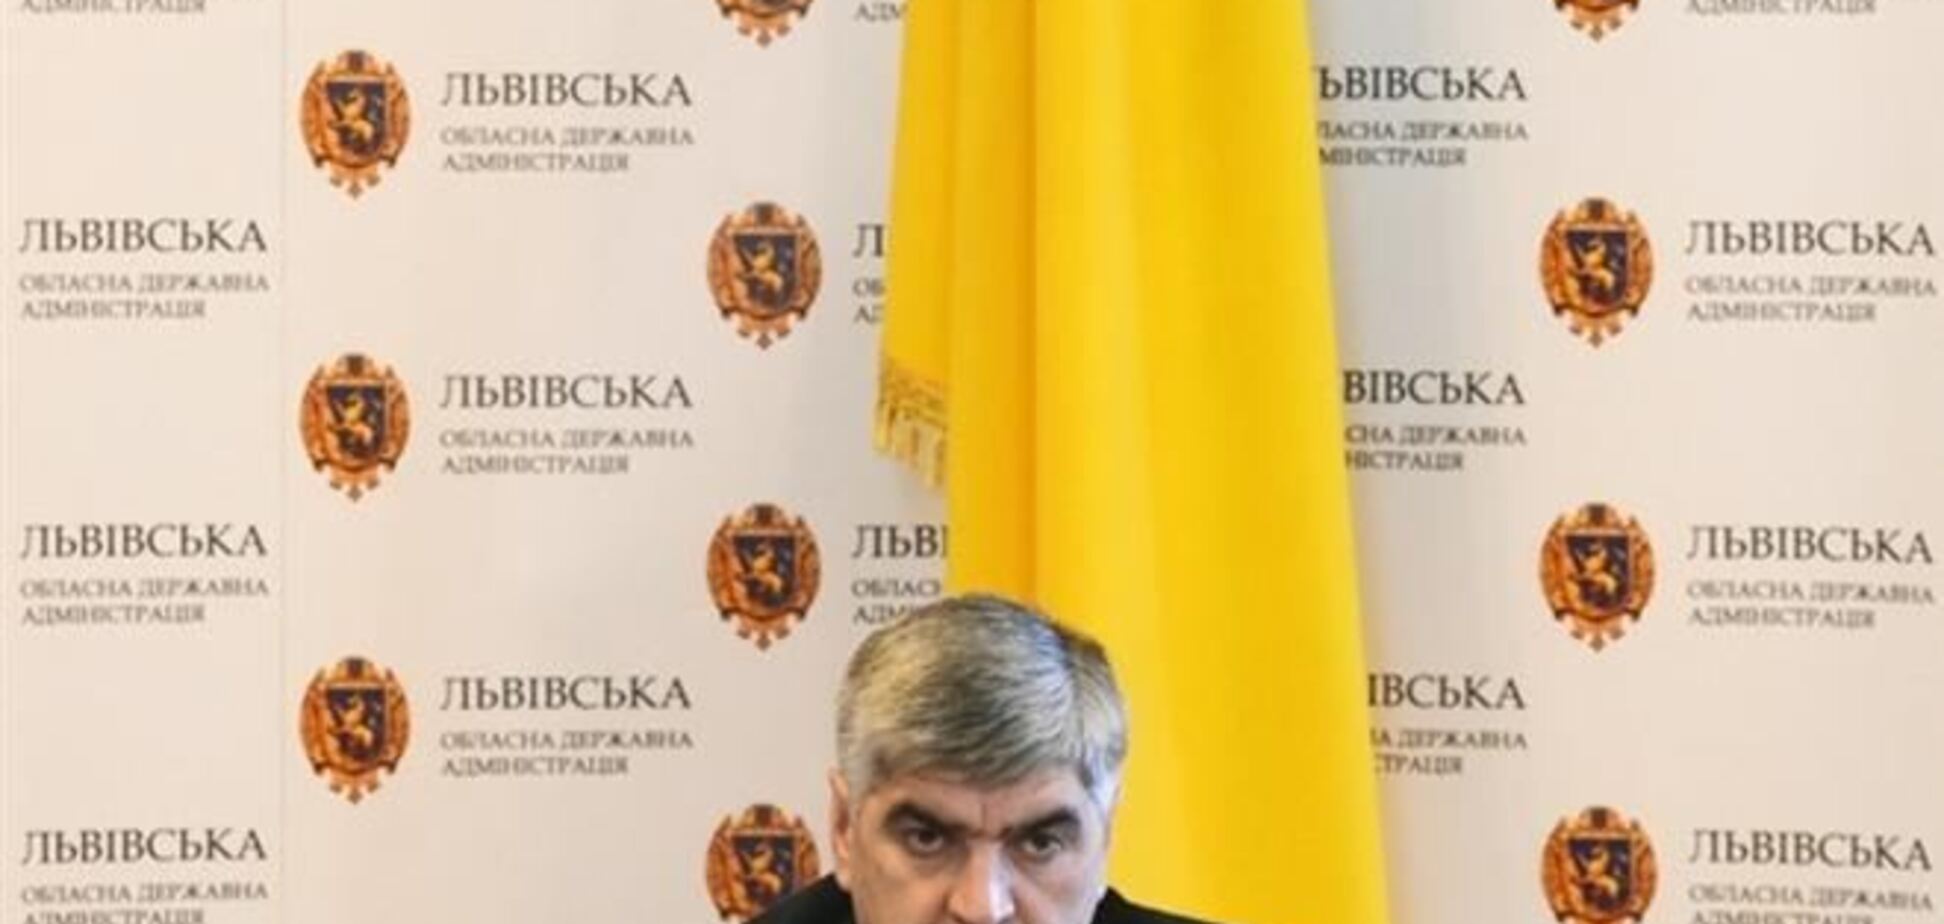 Львівський губернатор Сало вже не йде у відставку після захоплення ОДА